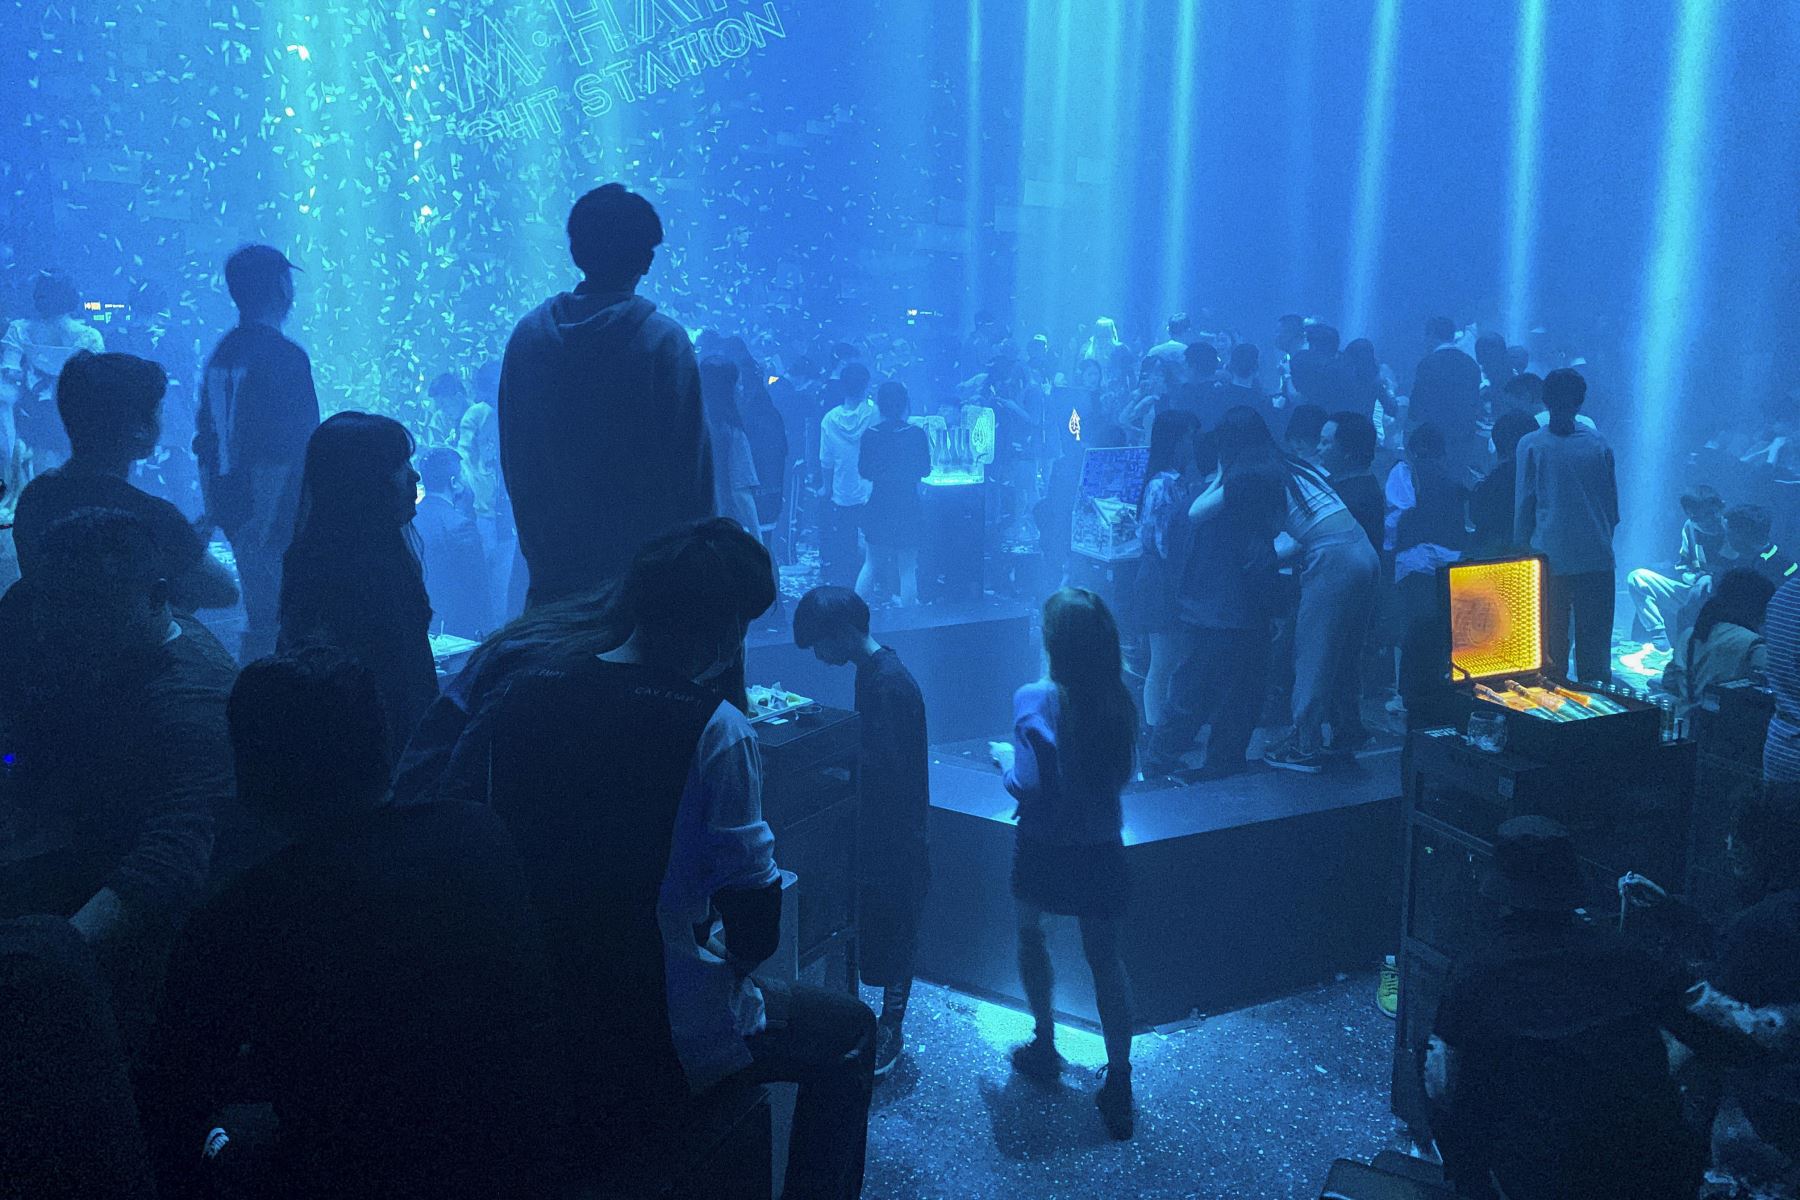 La gente visita un club nocturno en Wuhan, provincia central de Hubei en China.
Foto: AFP